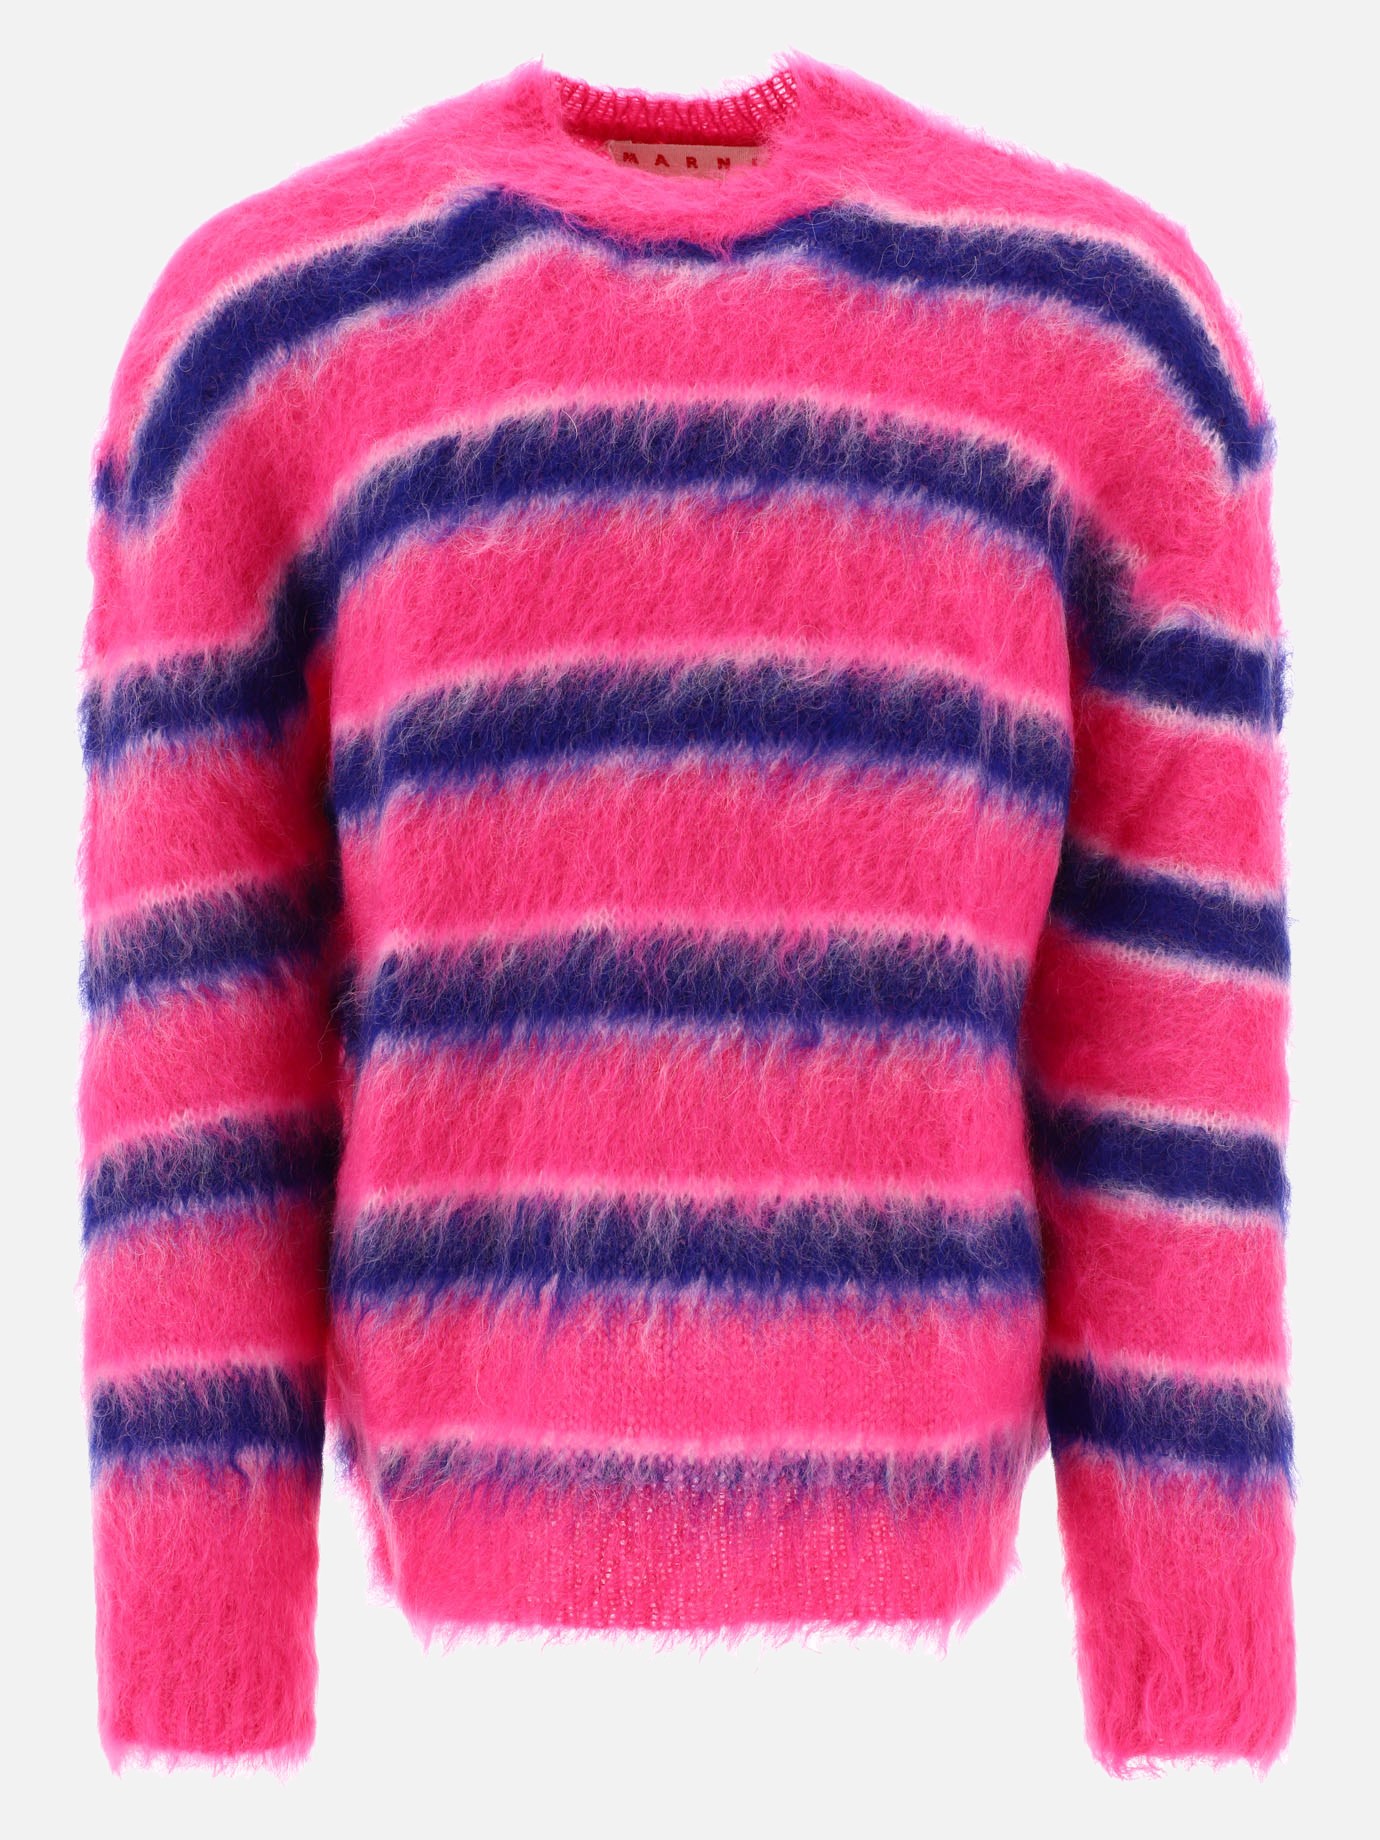  Fuzzy Wuzzy Brushed sweaterby Marni - 8